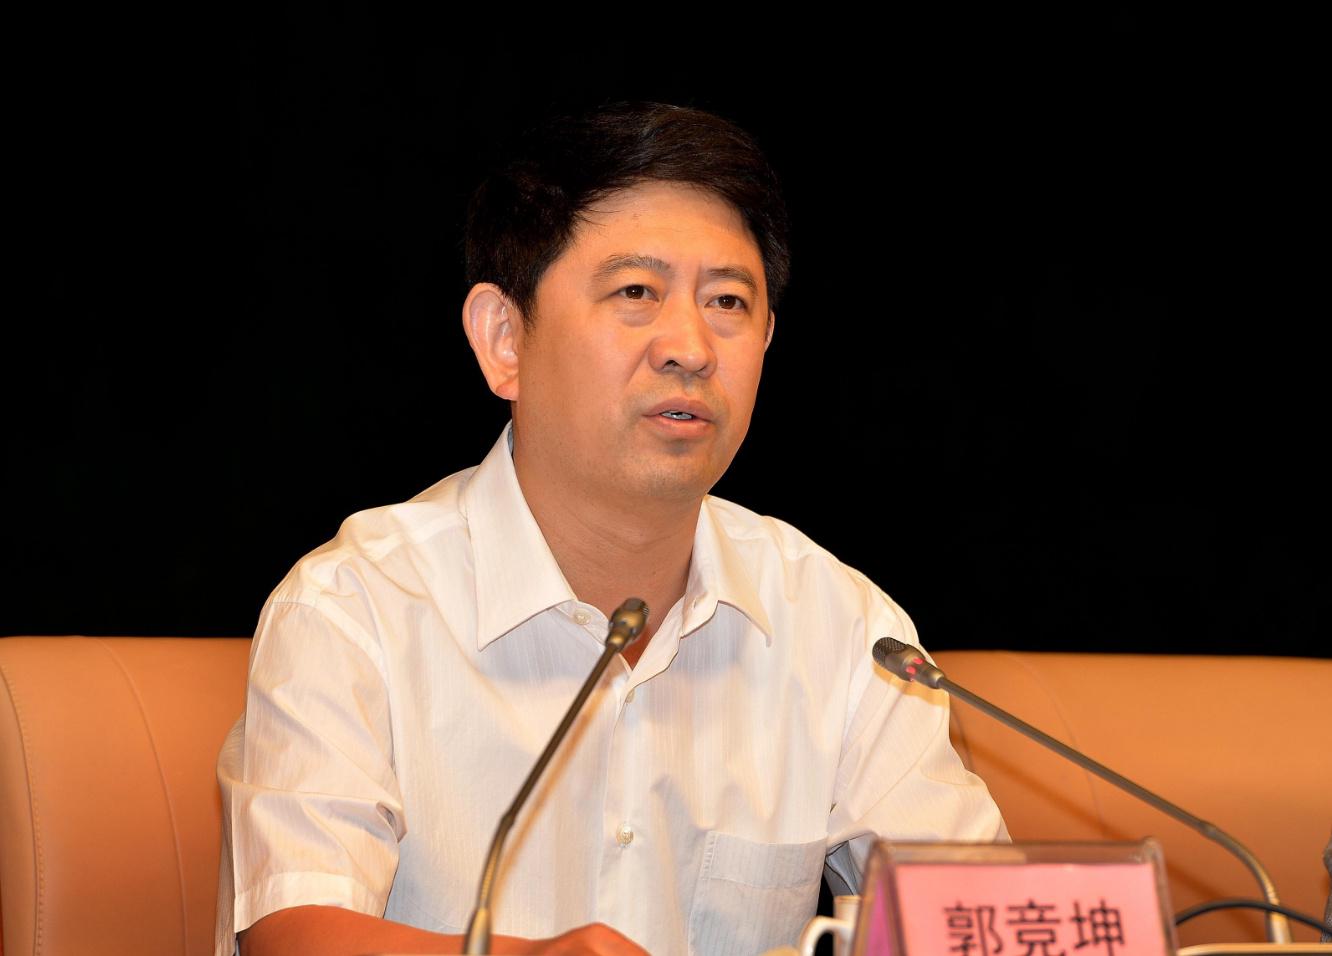 最高人民法院办公厅主任郭竞坤被调查